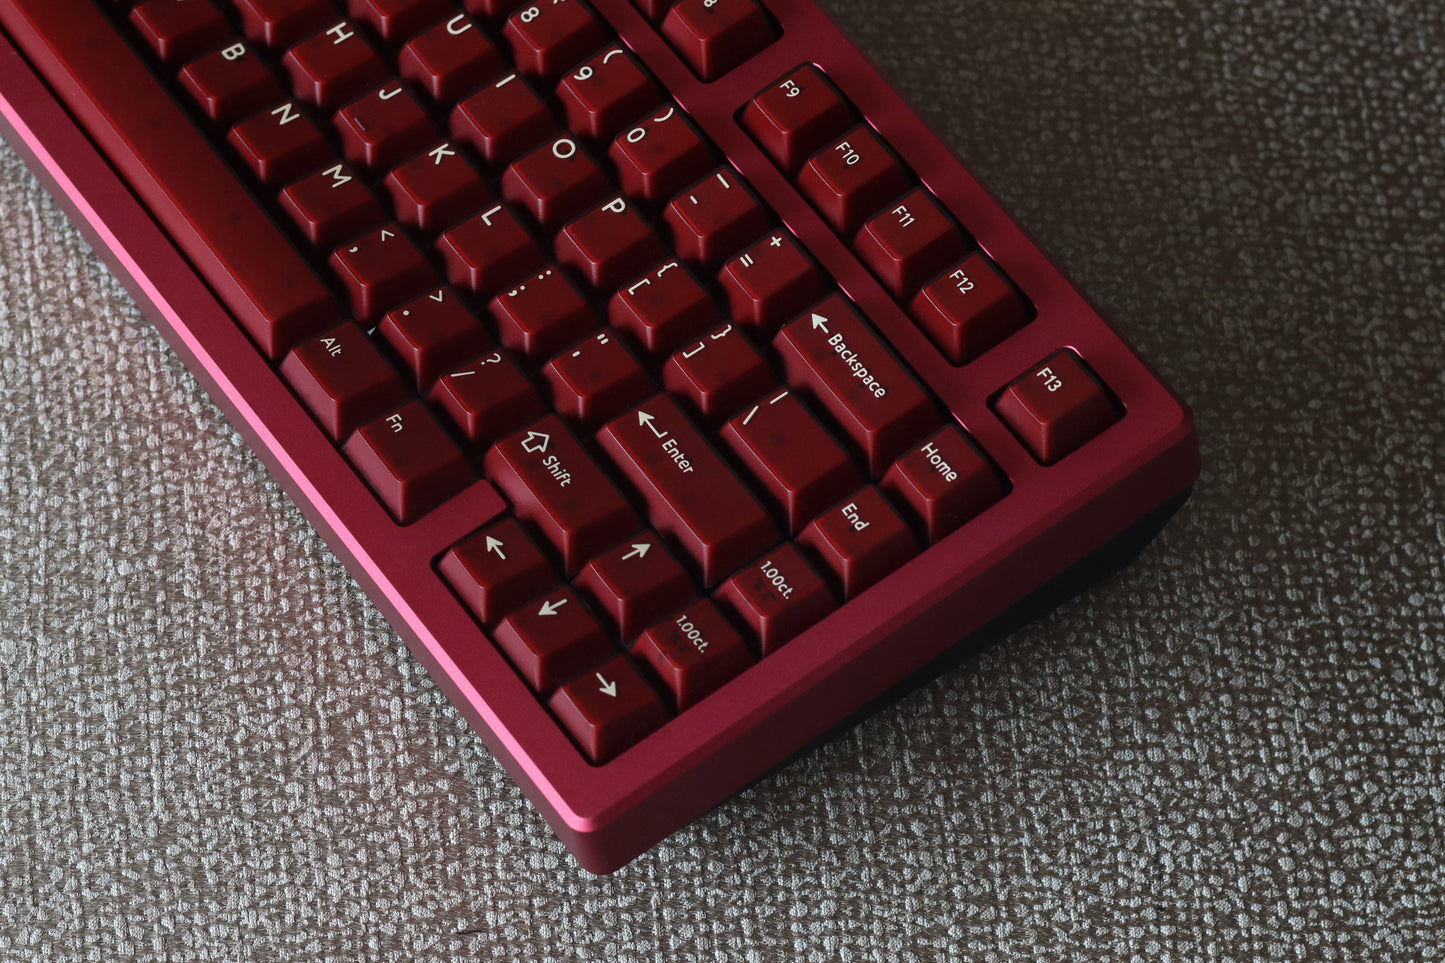 
                  
                    (Group Buy) Jris75 Keyboard Kit - Wine Red & Black (Anodised)
                  
                